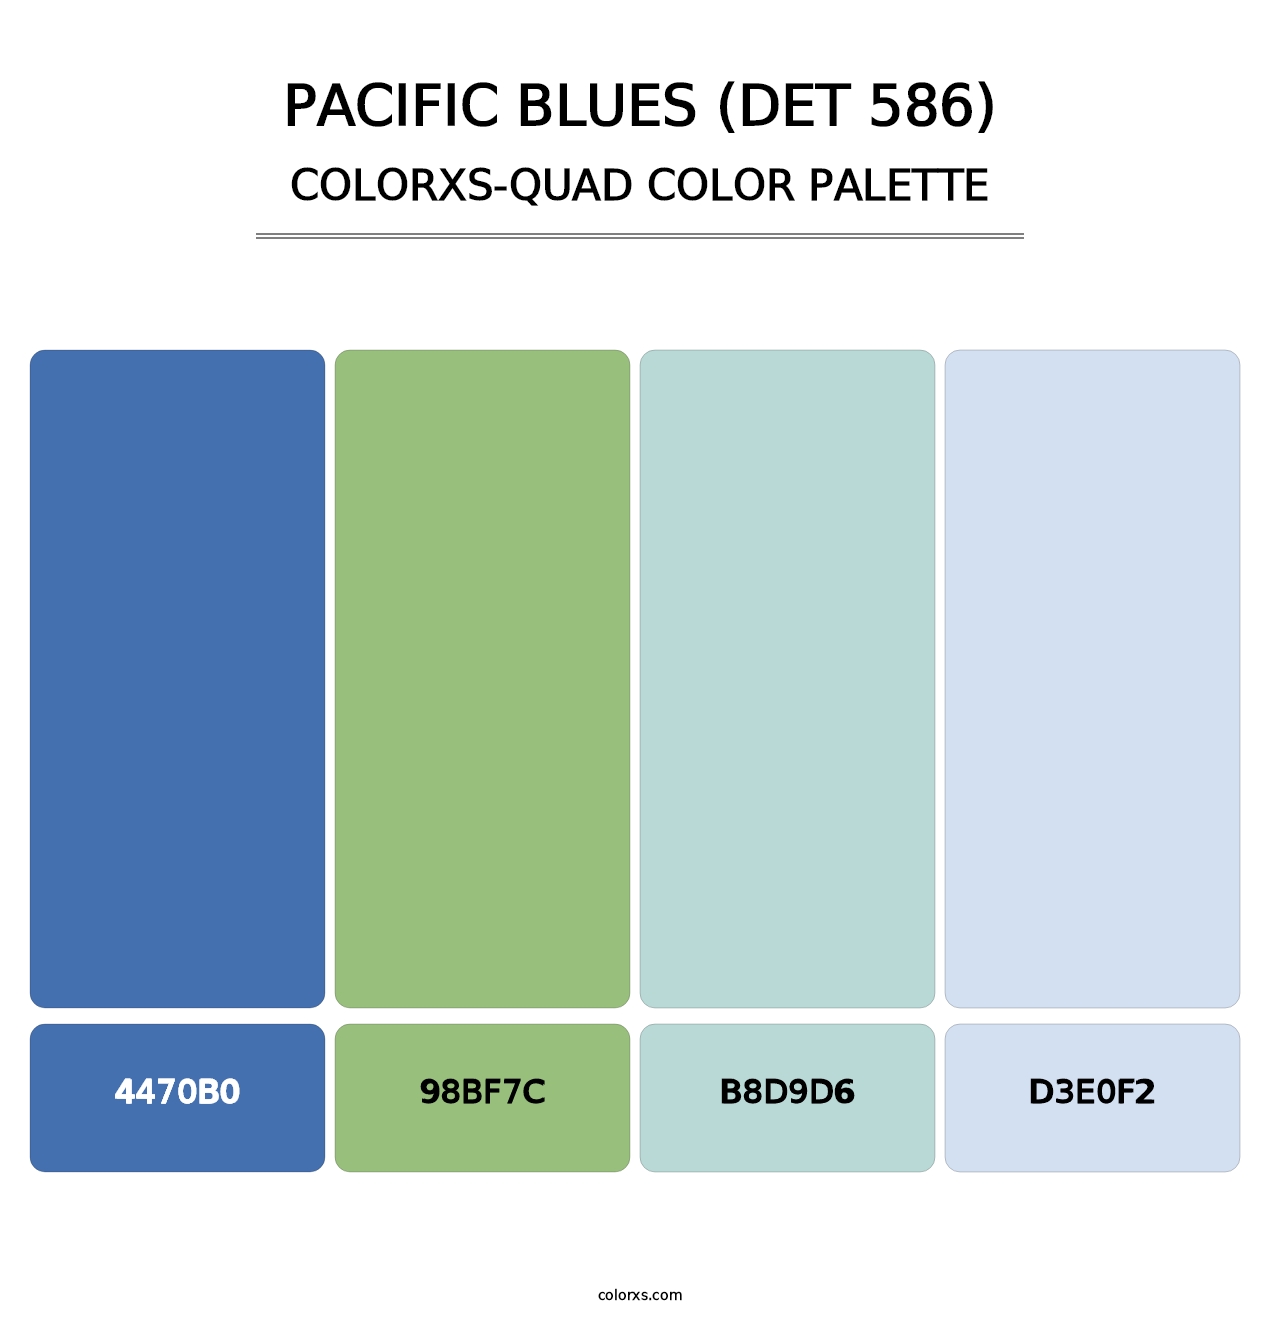 Pacific Blues (DET 586) - Colorxs Quad Palette